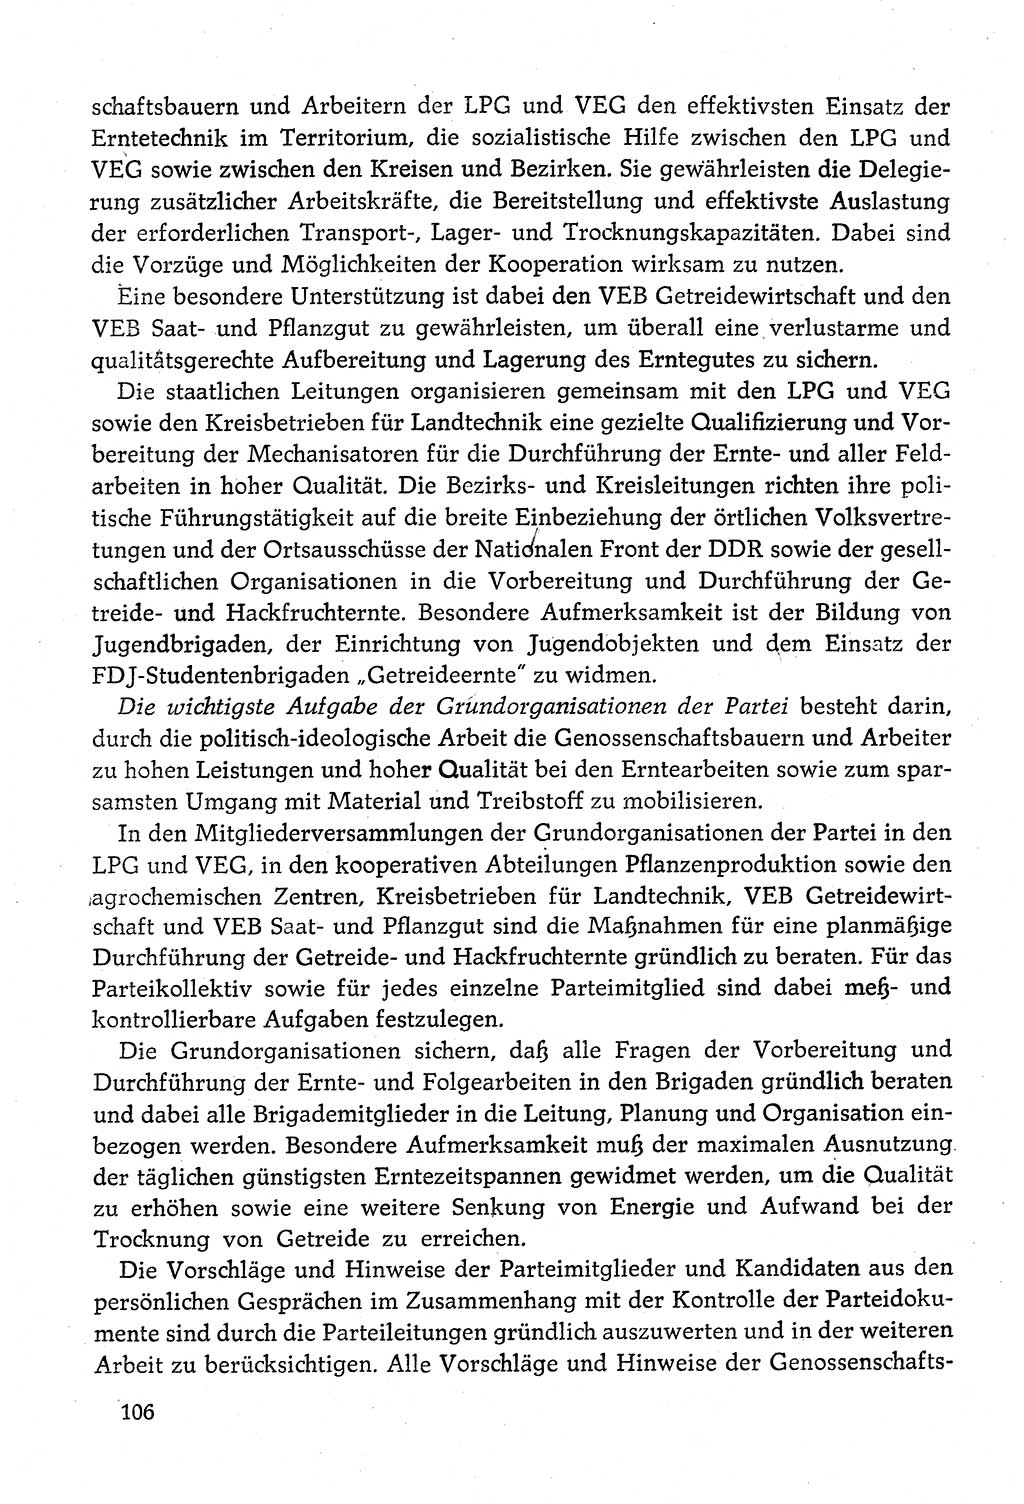 Dokumente der Sozialistischen Einheitspartei Deutschlands (SED) [Deutsche Demokratische Republik (DDR)] 1980-1981, Seite 106 (Dok. SED DDR 1980-1981, S. 106)